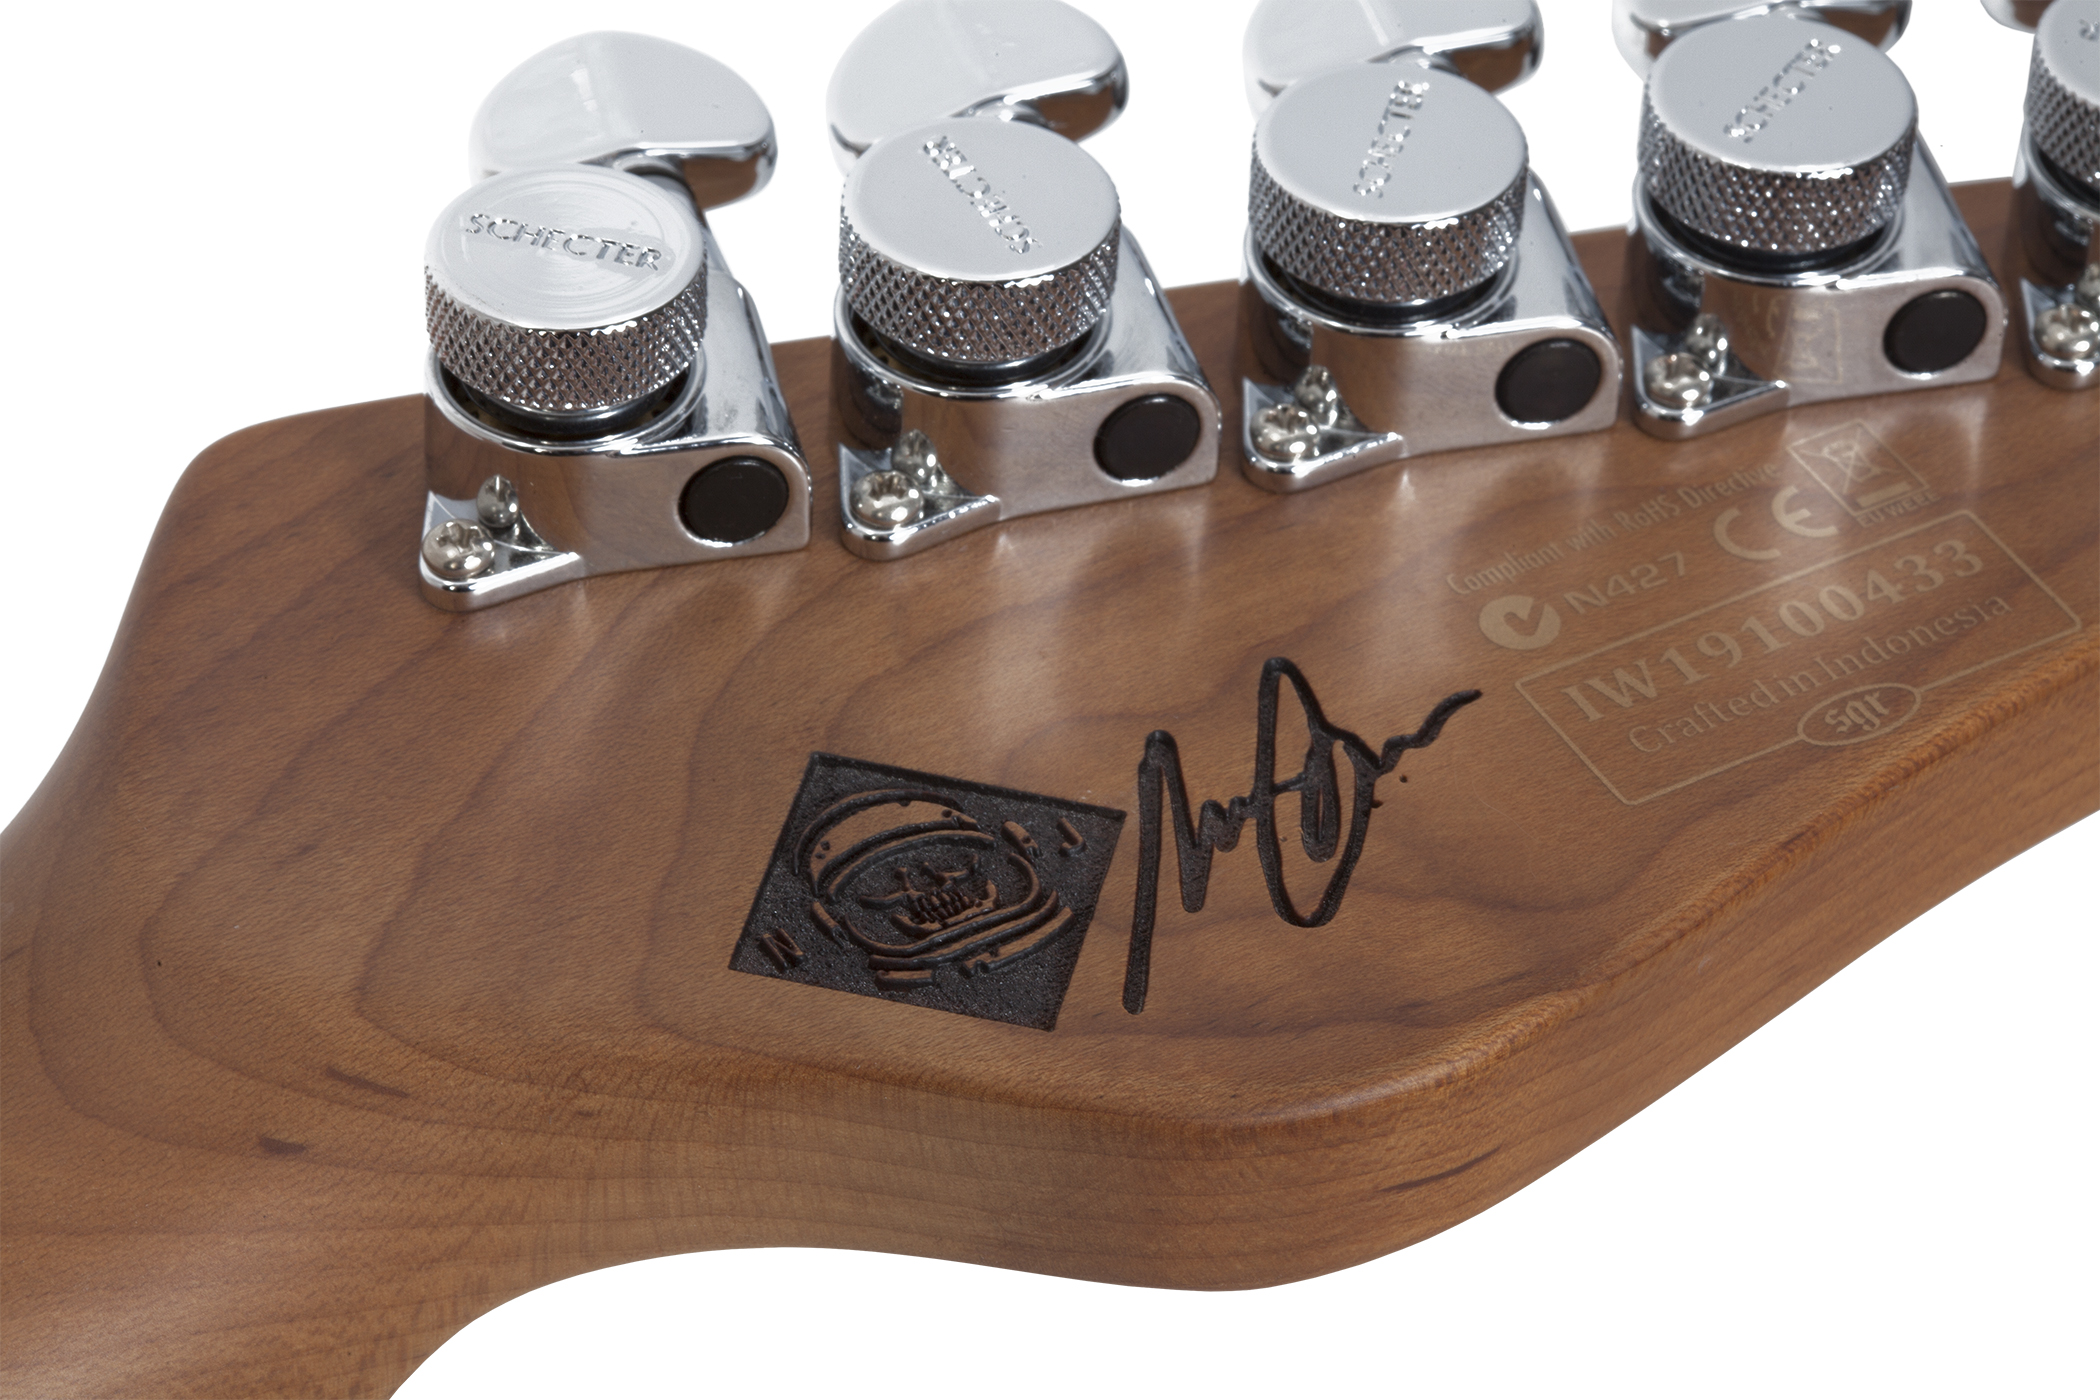 Schecter Nick Johnston Traditional Gaucher Signature 3s Trem Eb - Atomic Coral - E-Gitarre für Linkshänder - Variation 3